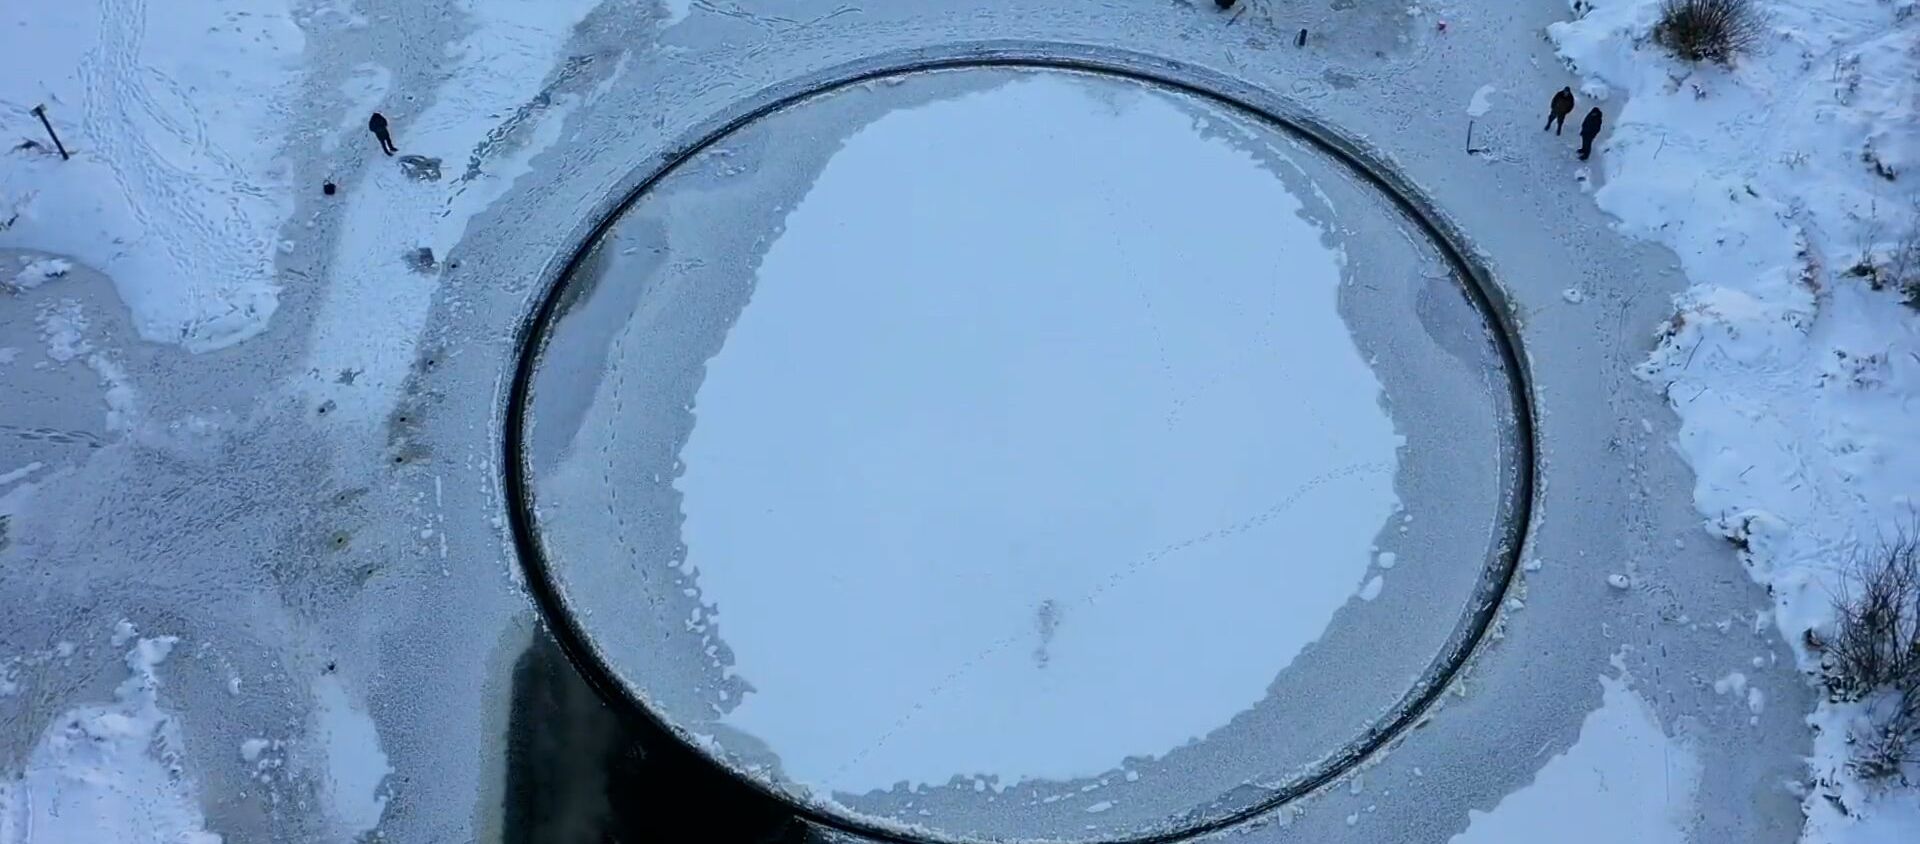 Відэафакт: ідэальна роўны гіганцкі круг з'явіўся на рацэ пад Брэстам - Sputnik Беларусь, 1920, 03.02.2021